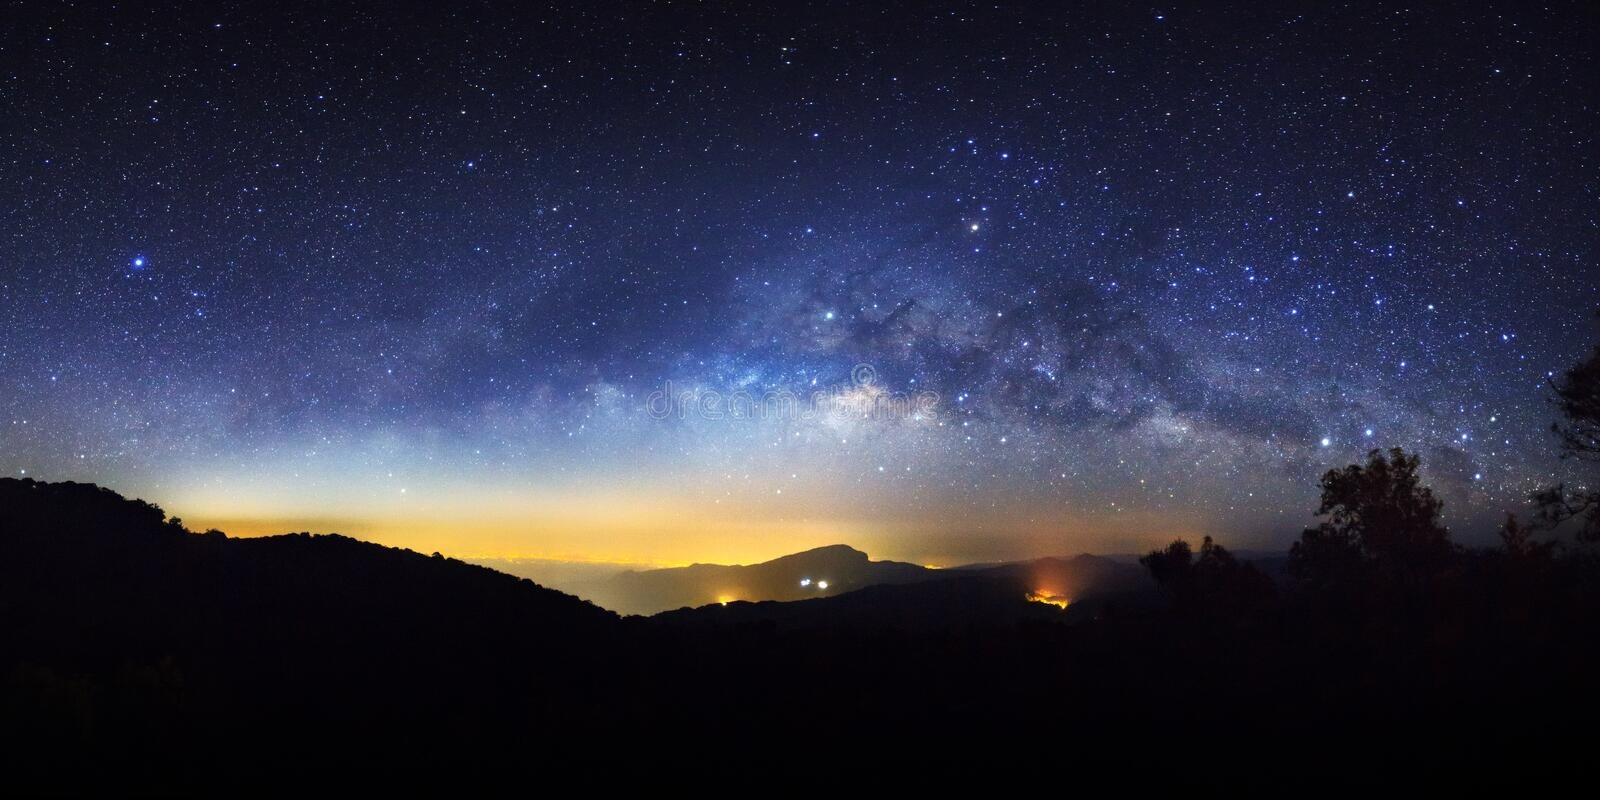 Tìm hiểu hơn 118 hình nền bầu trời sao đêm mới nhất  thdonghoadian